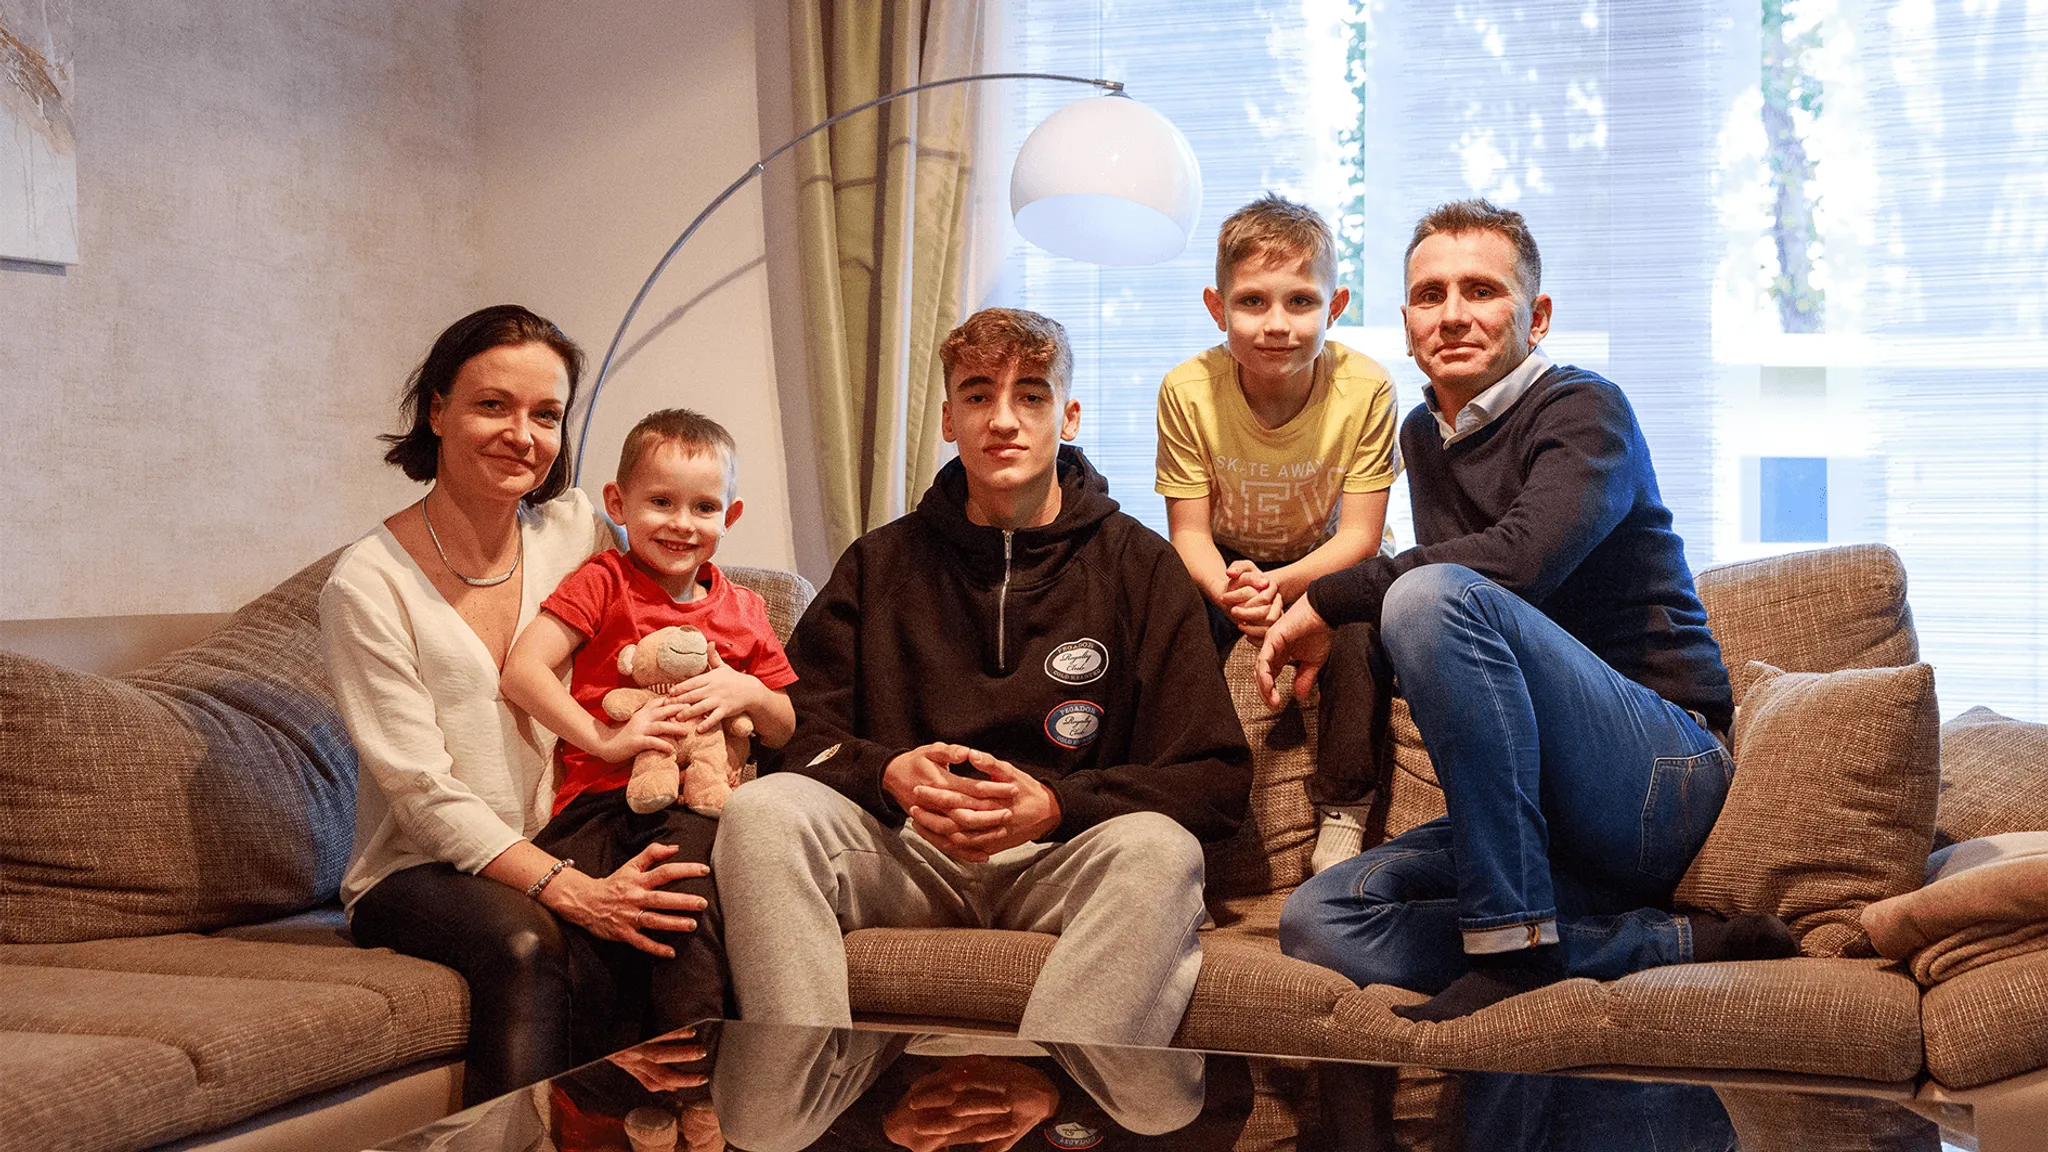 RB-Talent Lennert Gramelsberger bei seiner Gastfamilie. Credit: LVZ